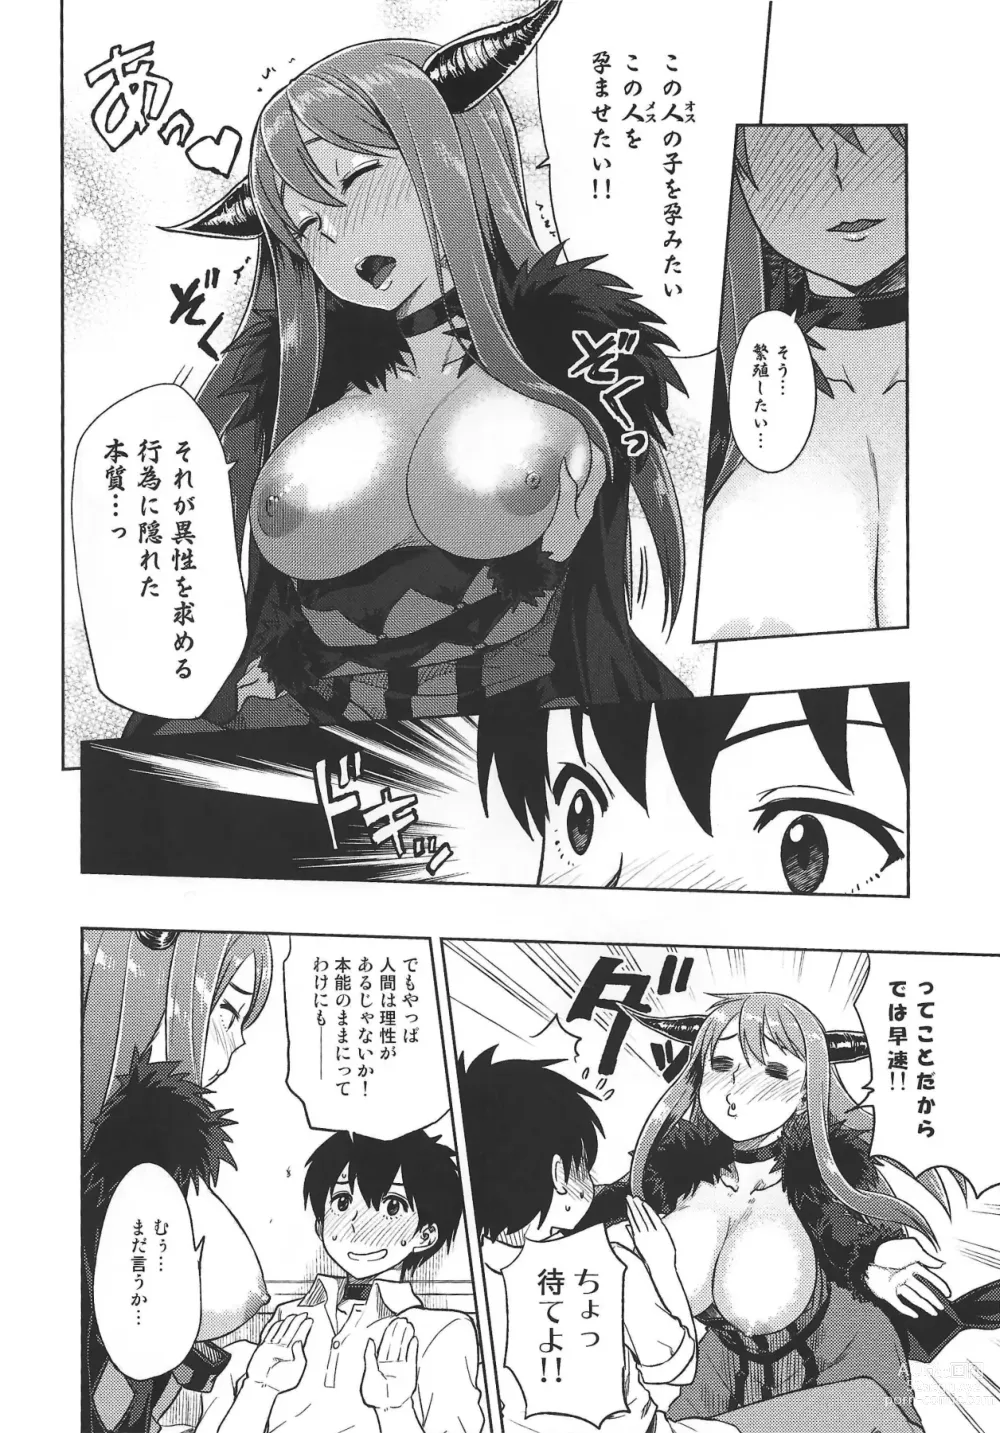 Page 5 of doujinshi Muchiroku 2013 Natsu